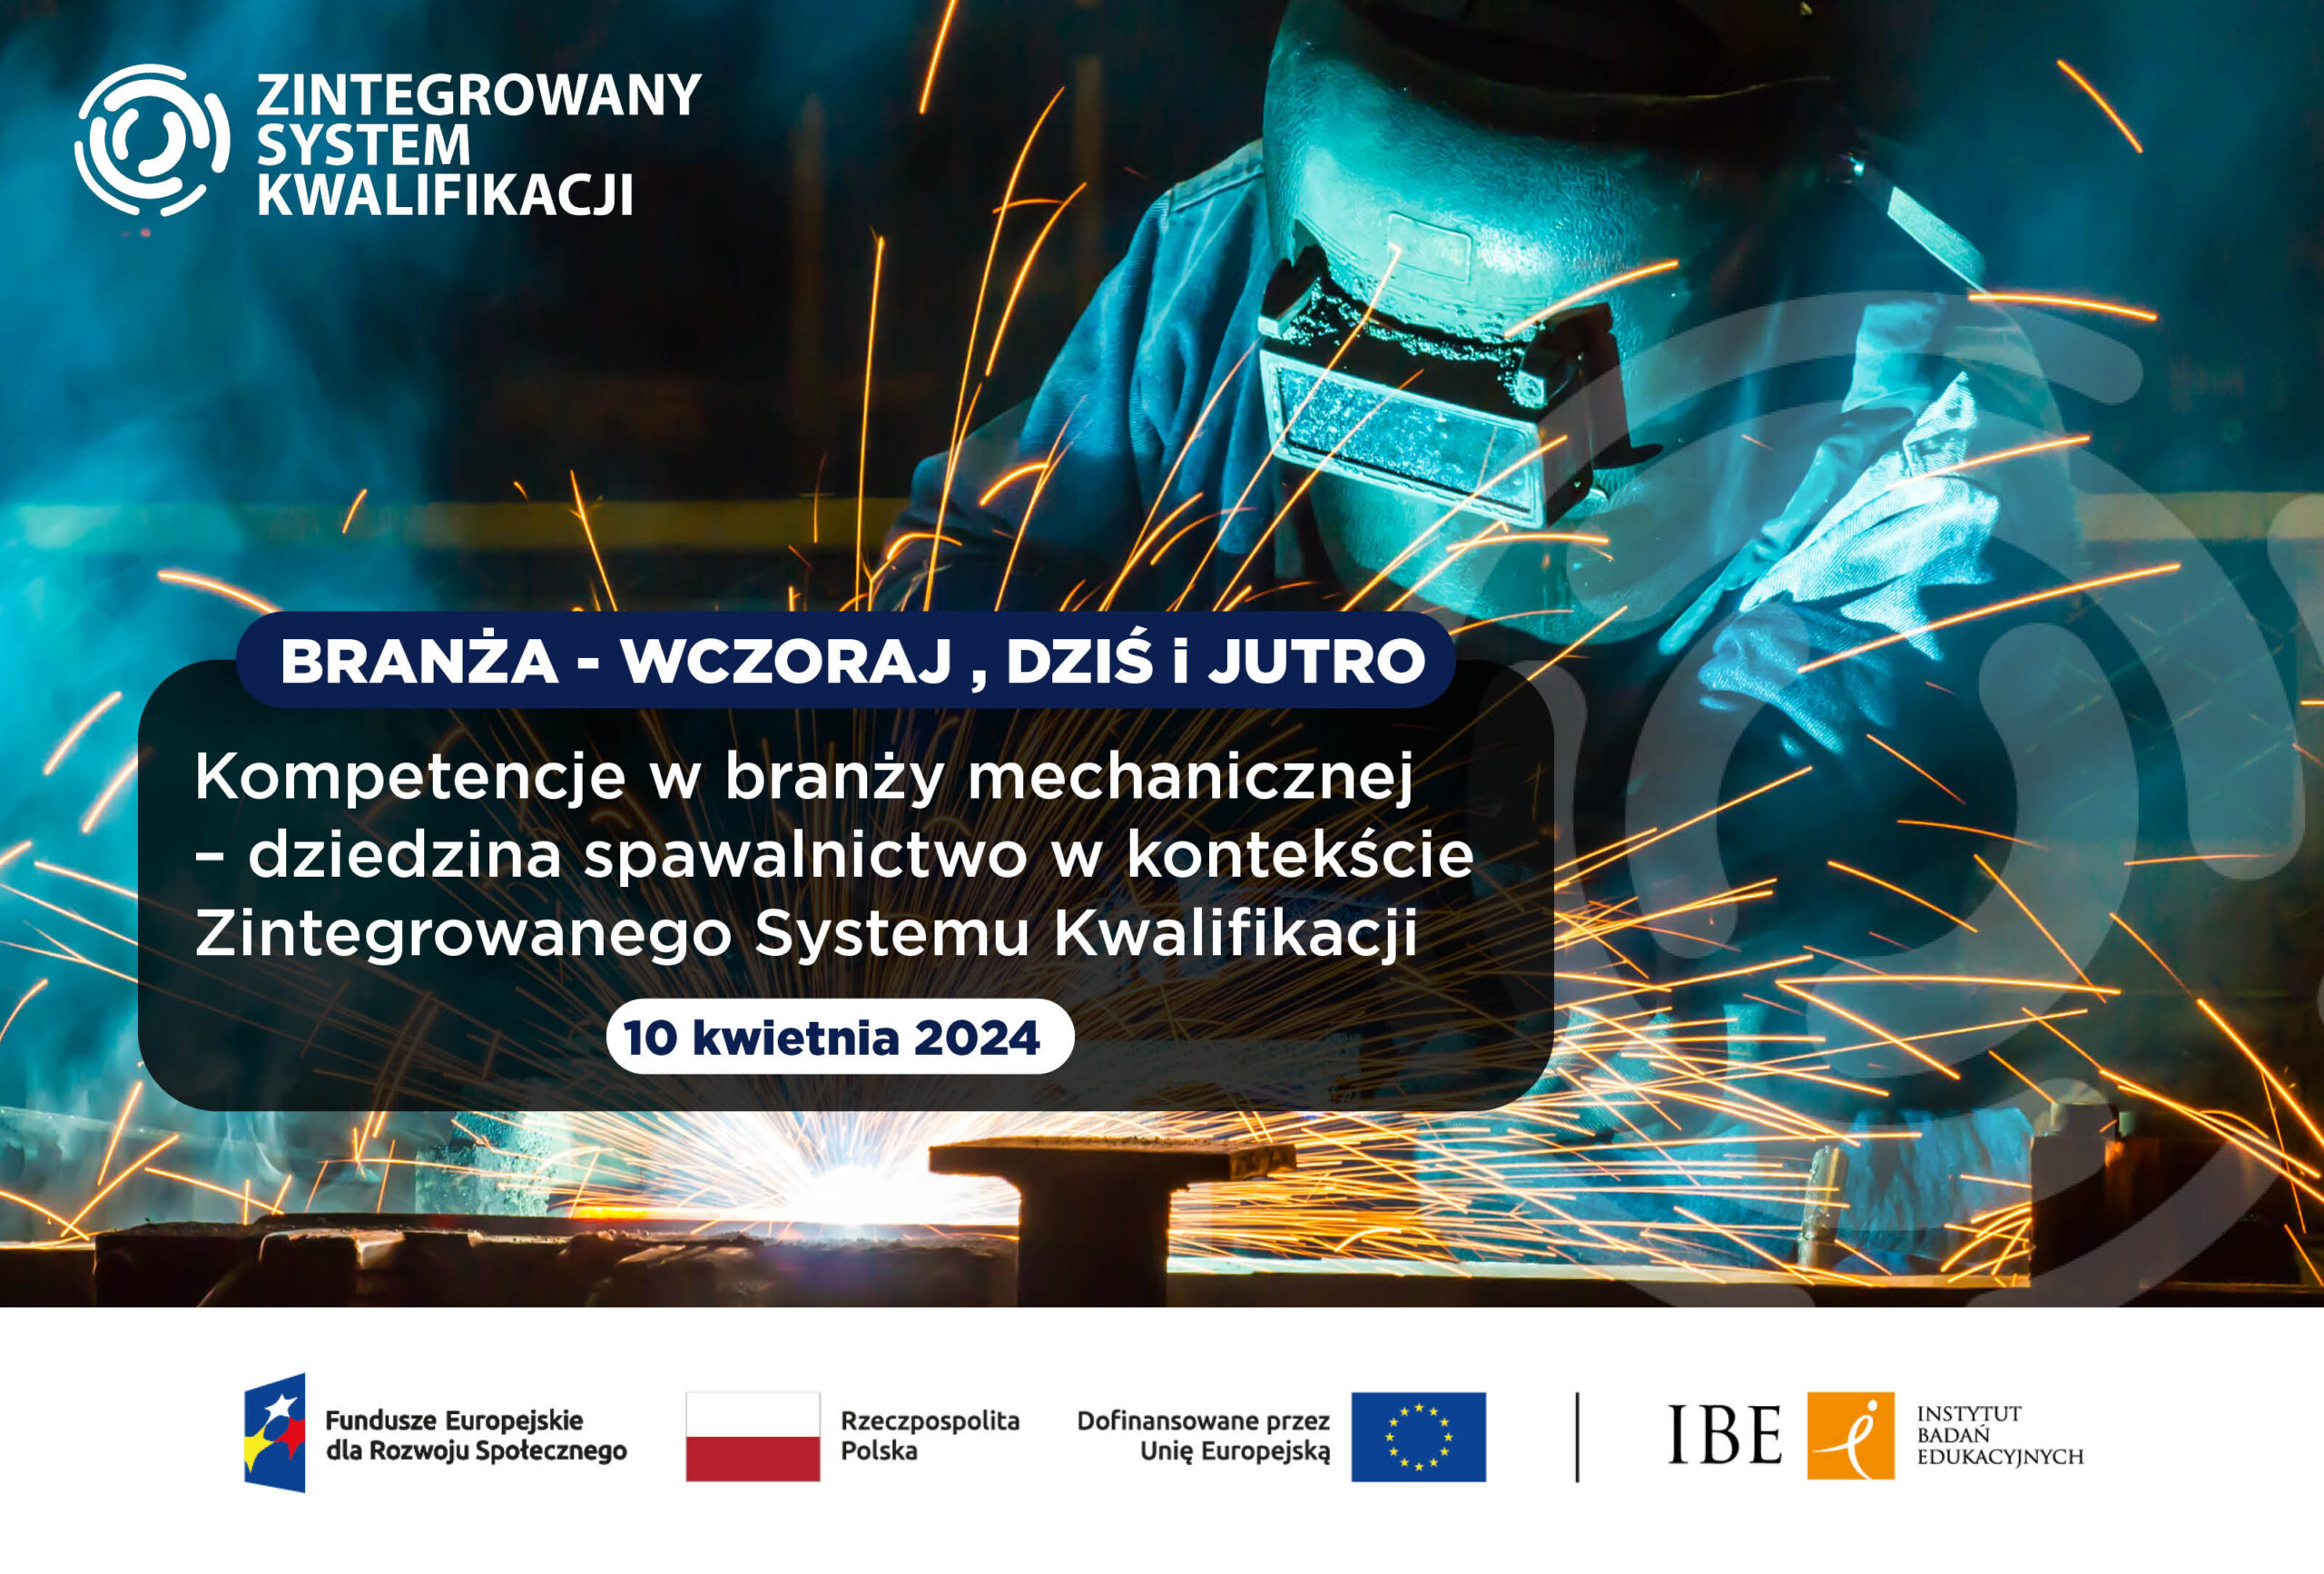 baner informacyjny nt. konferencji w Kielcach, z belką FERS i logo ZSK